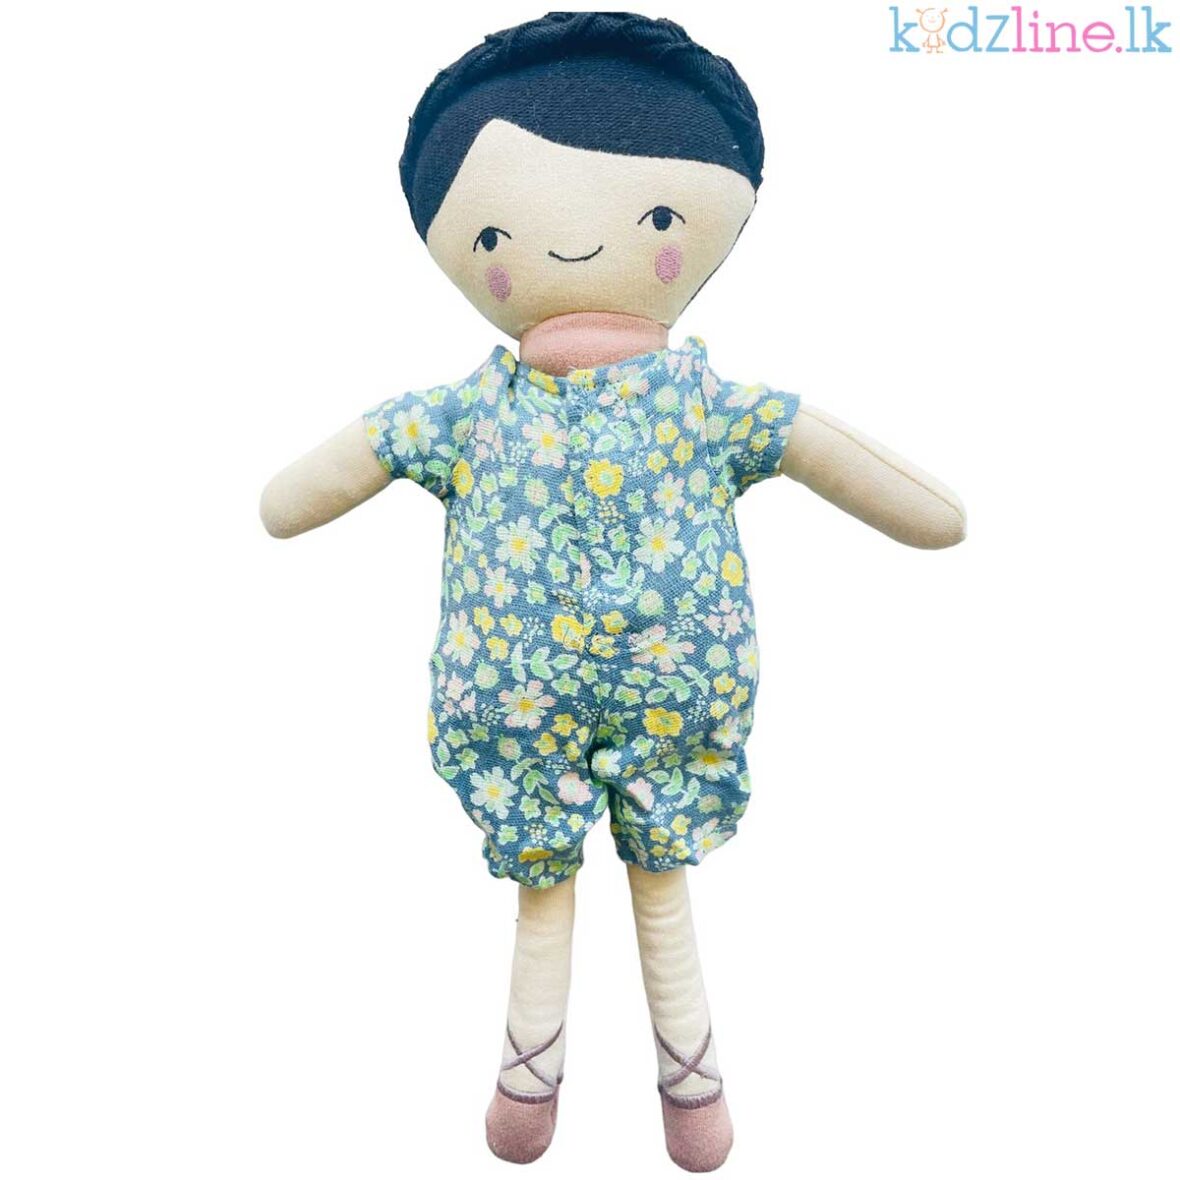 Cute Plush Soft Toy Doll